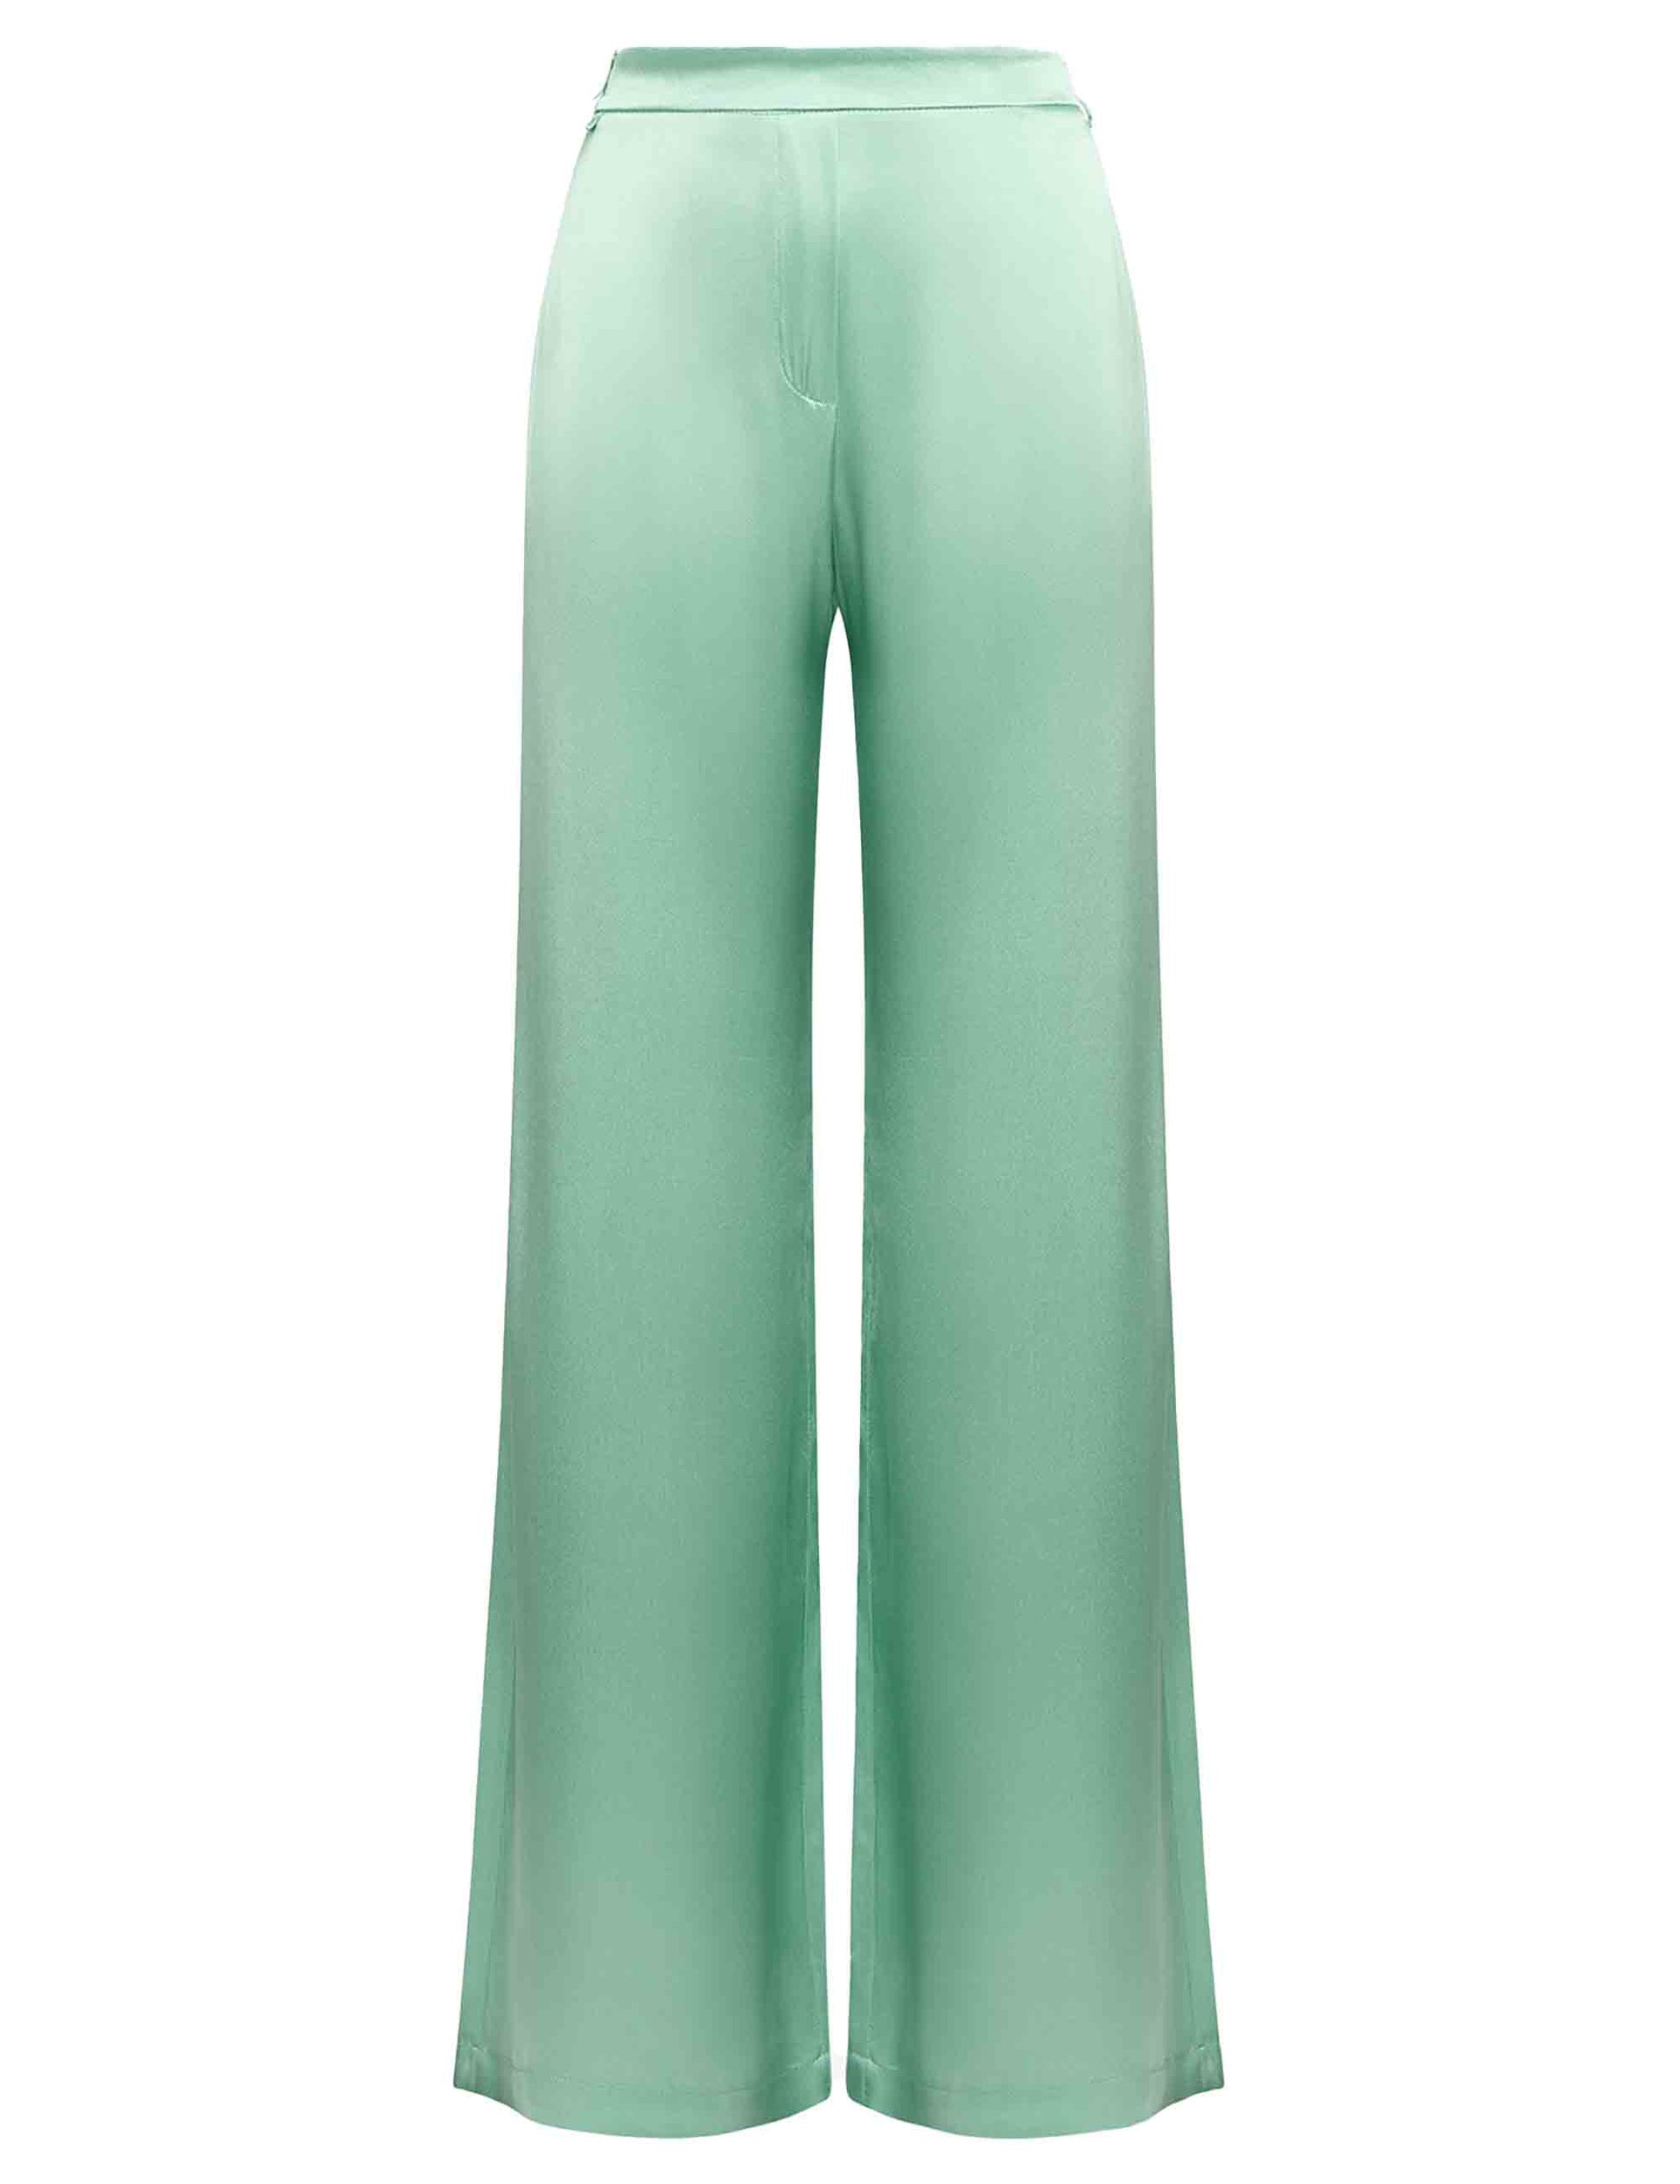 Shiny women's wide-leg trousers in green cady